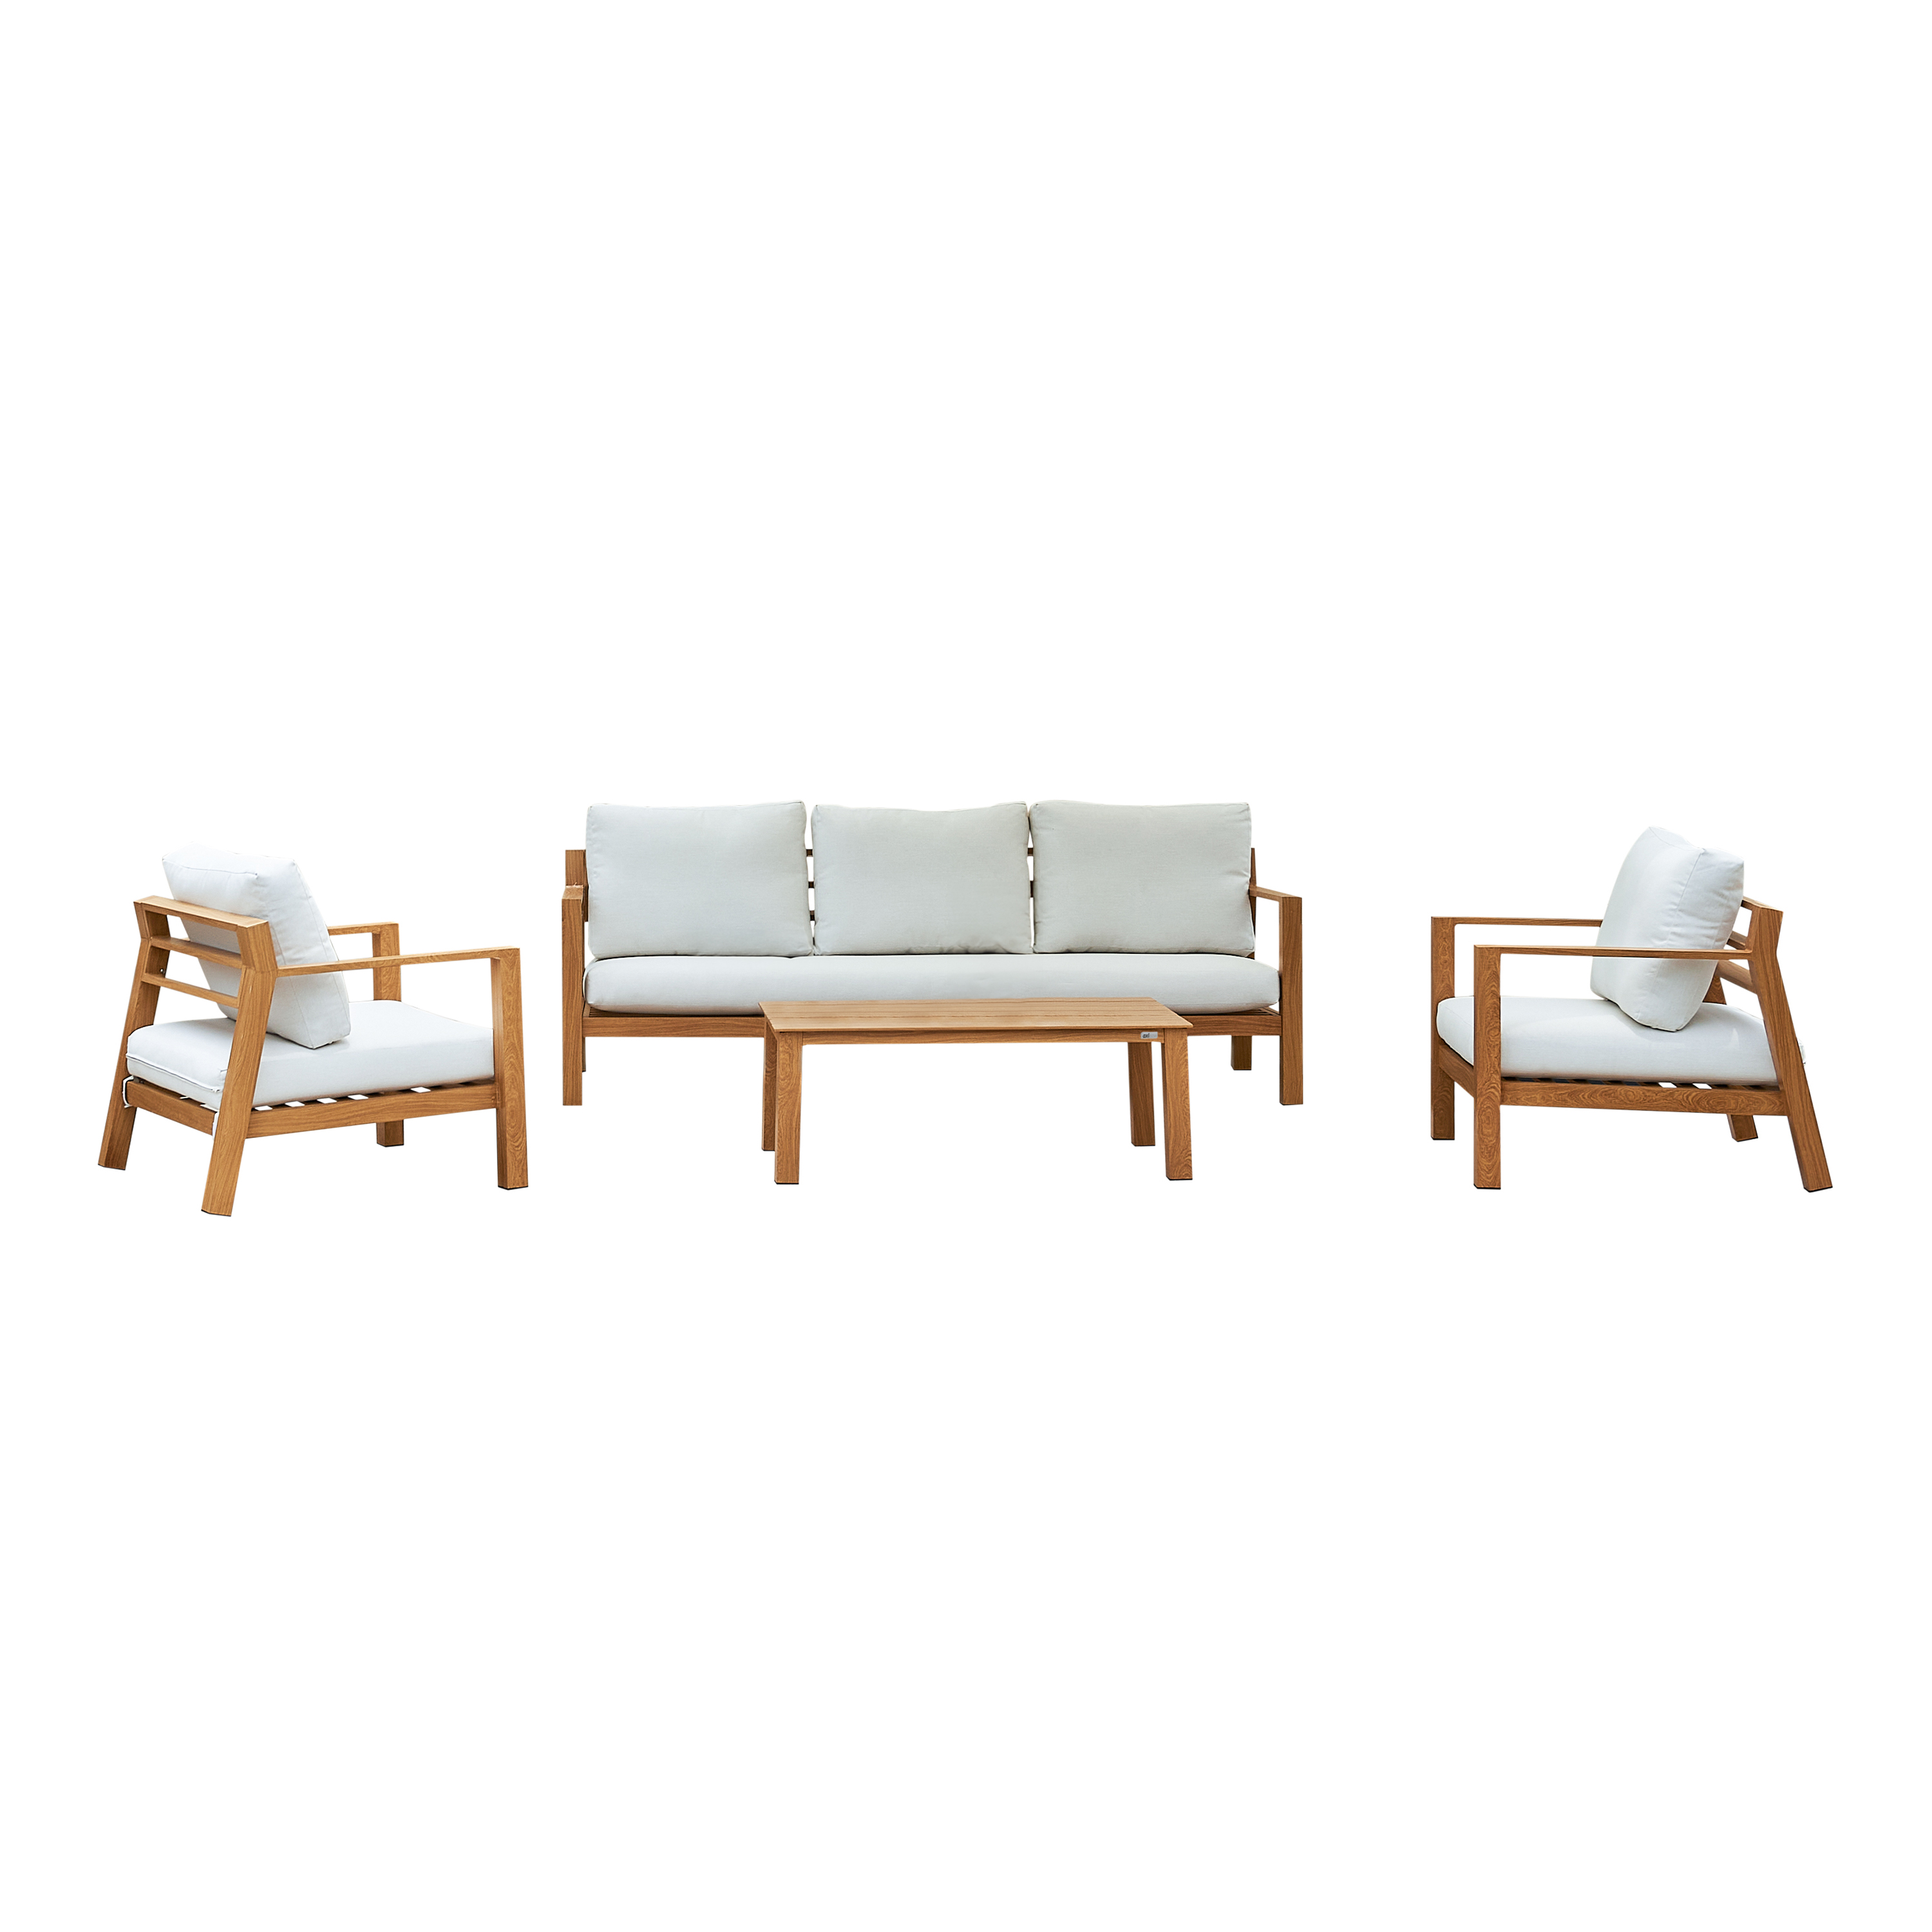 AXI Orla Salon de jardin 4-pièces avec canapé, table and 2 fauteuils Aspect Bois/beige